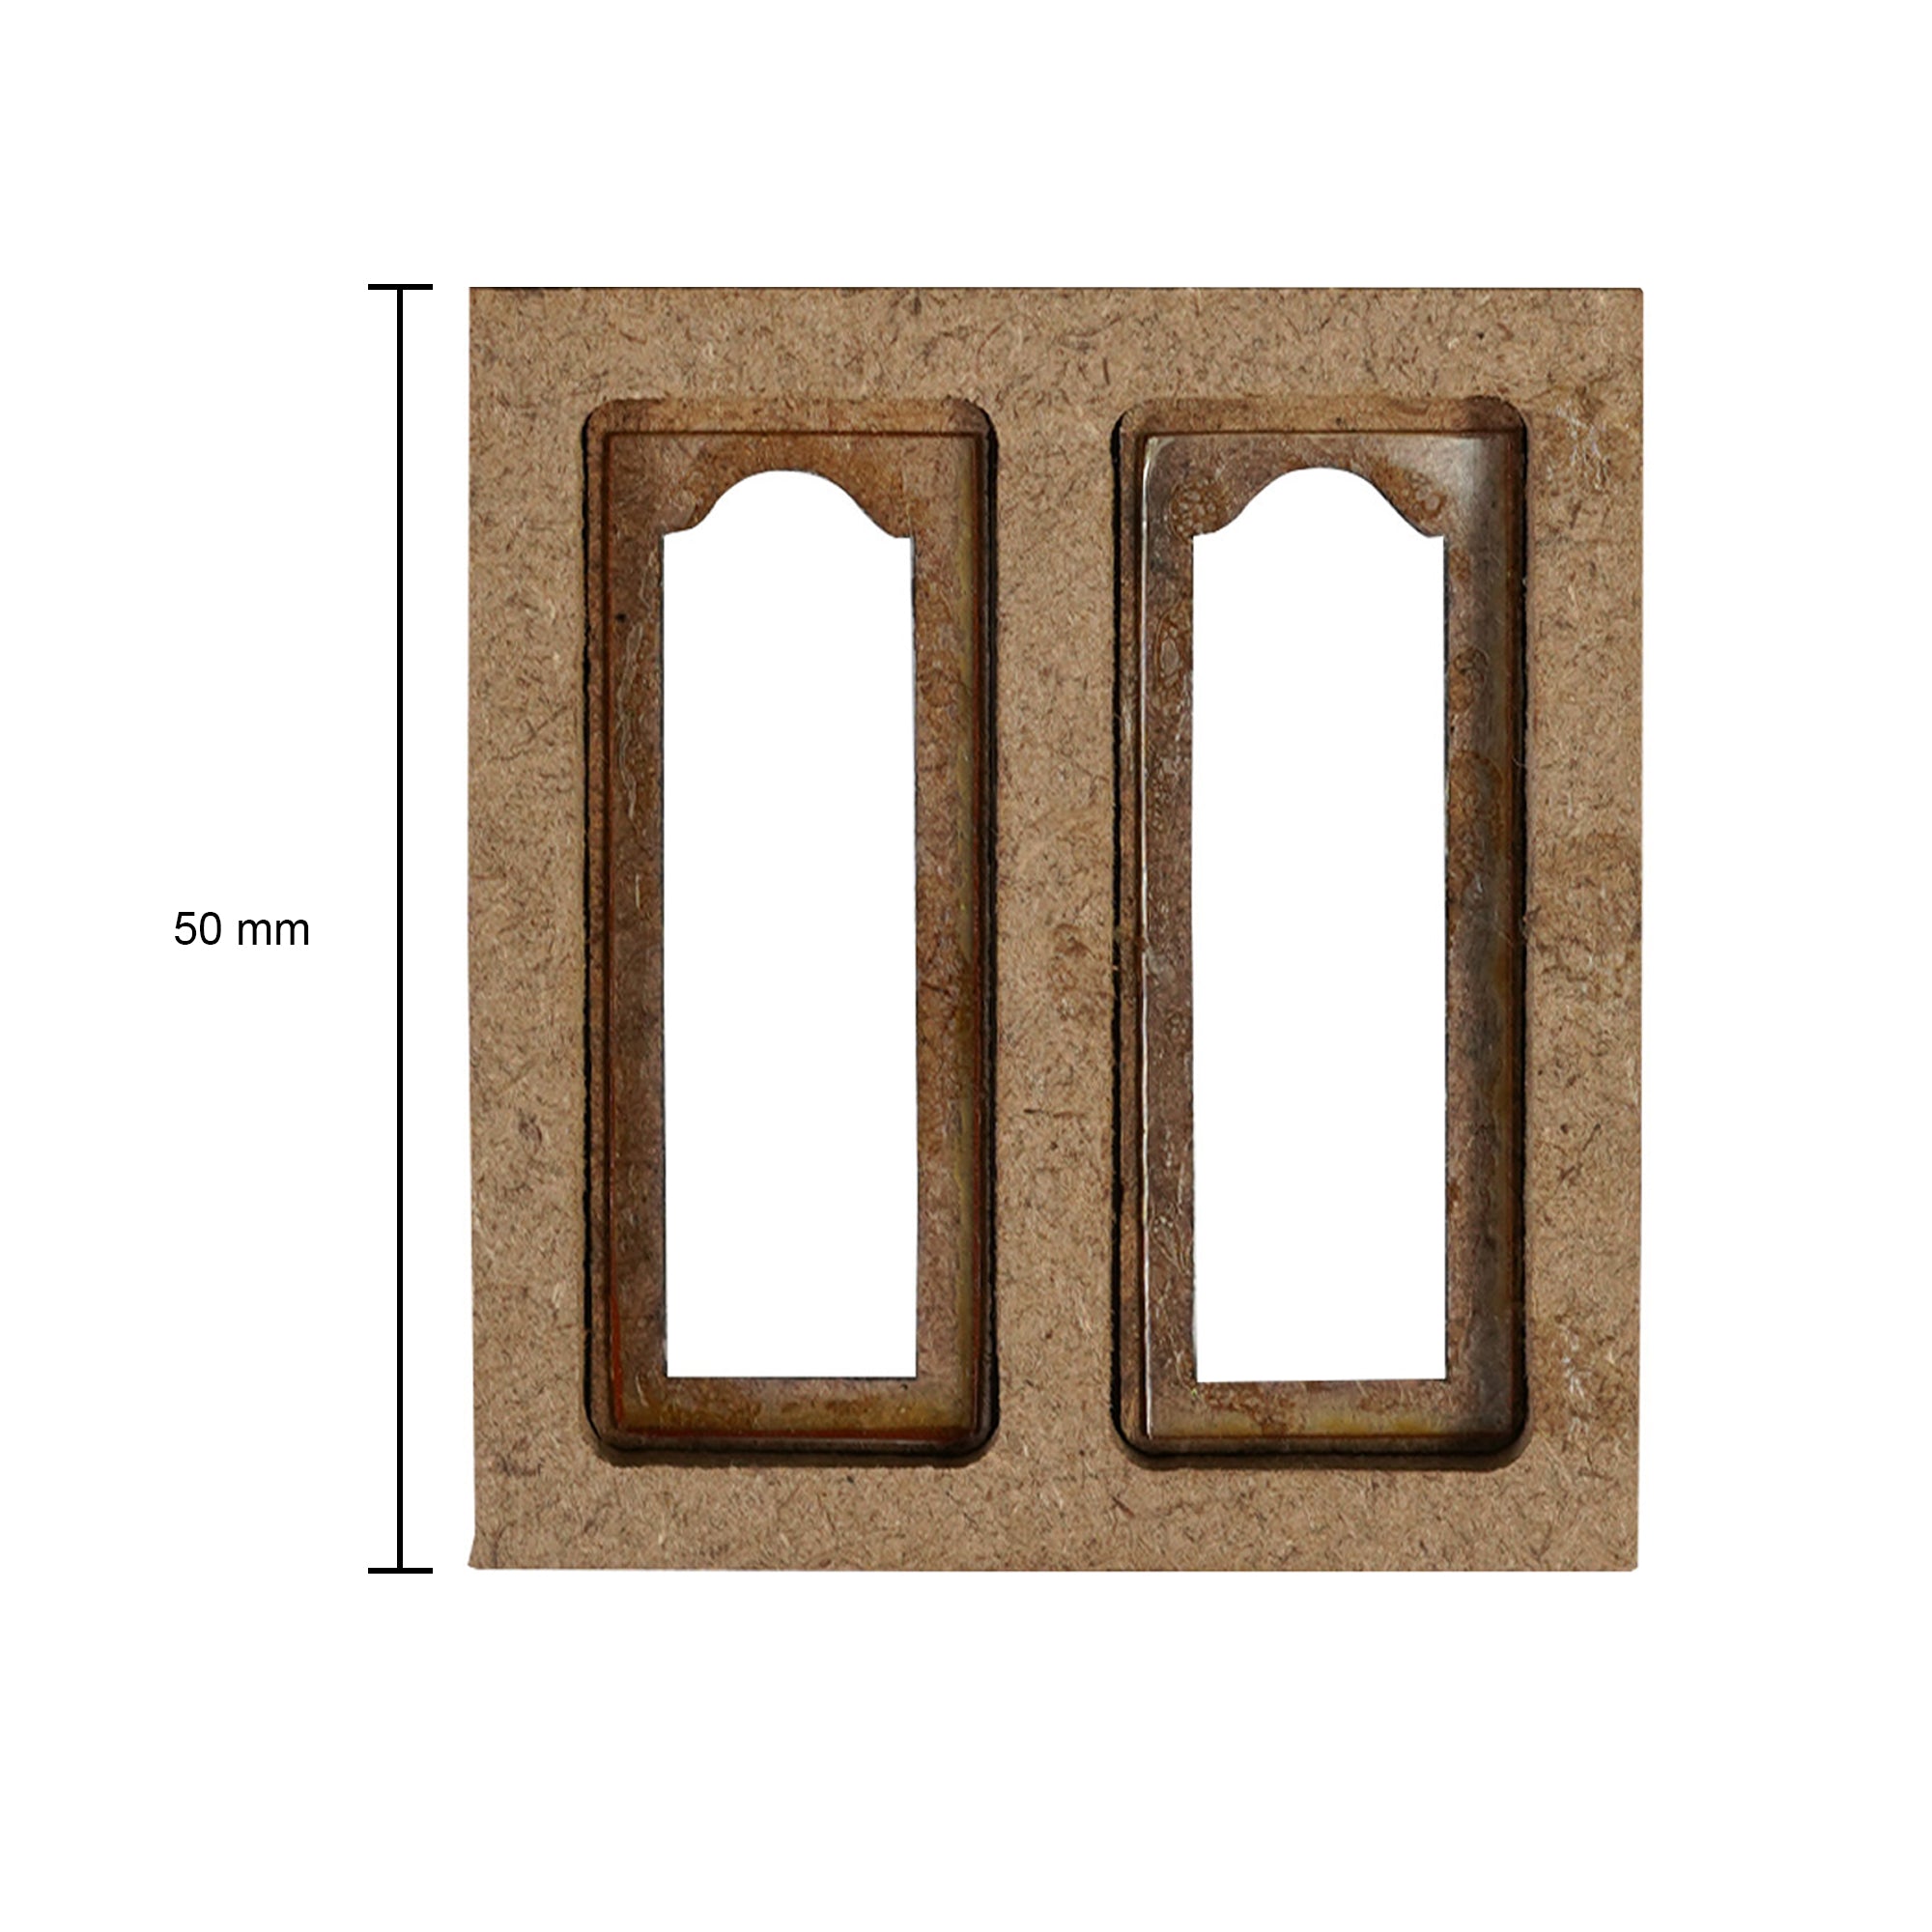 Build A Home 2 Door Window W44.7 X H49 mm 2pc